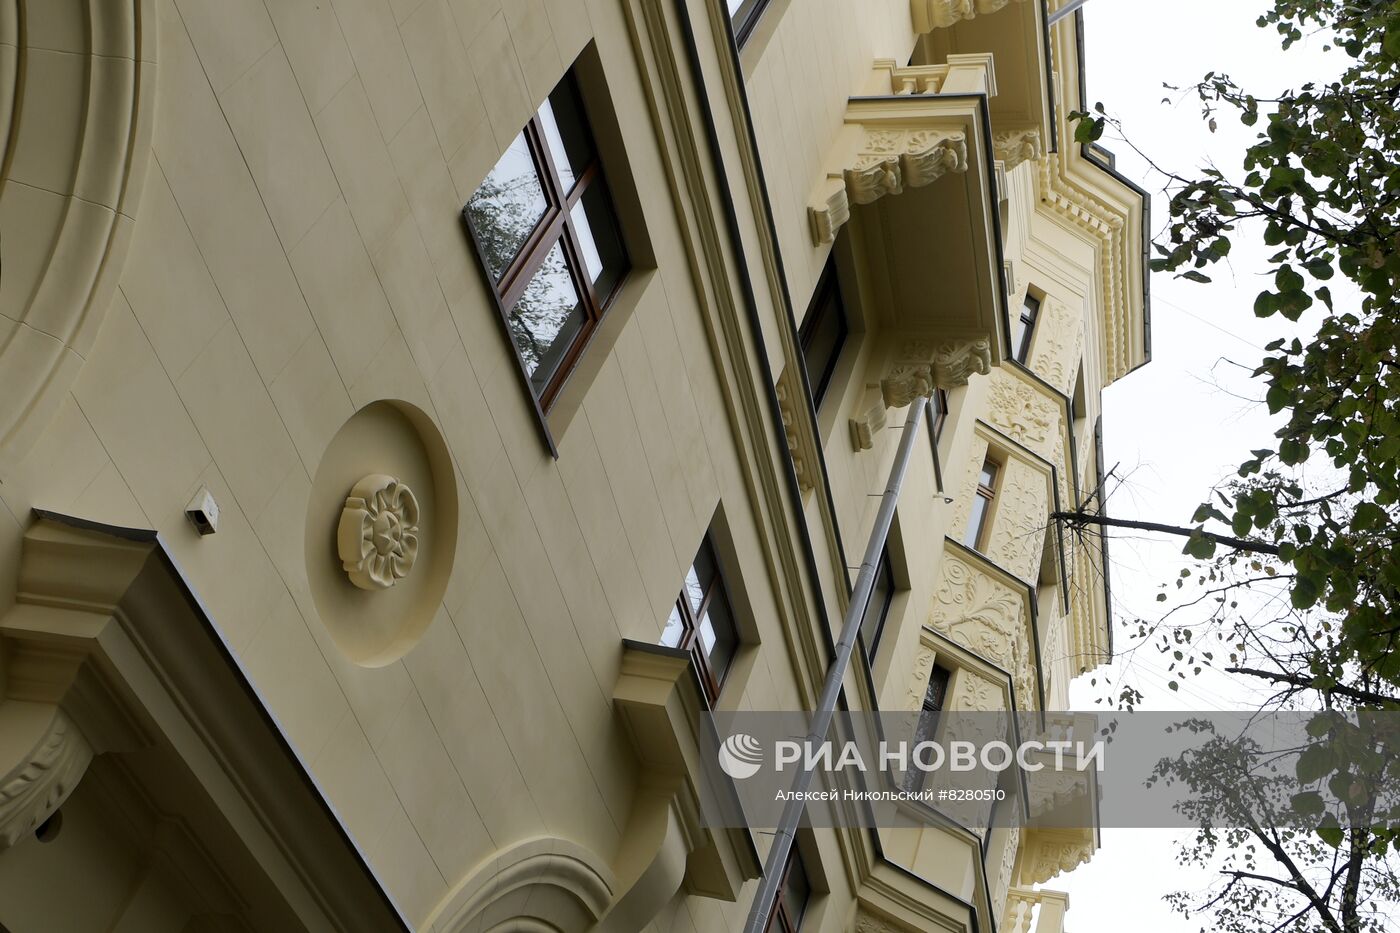 Дом на Поварской улице в Москве после реставрации и капремонта